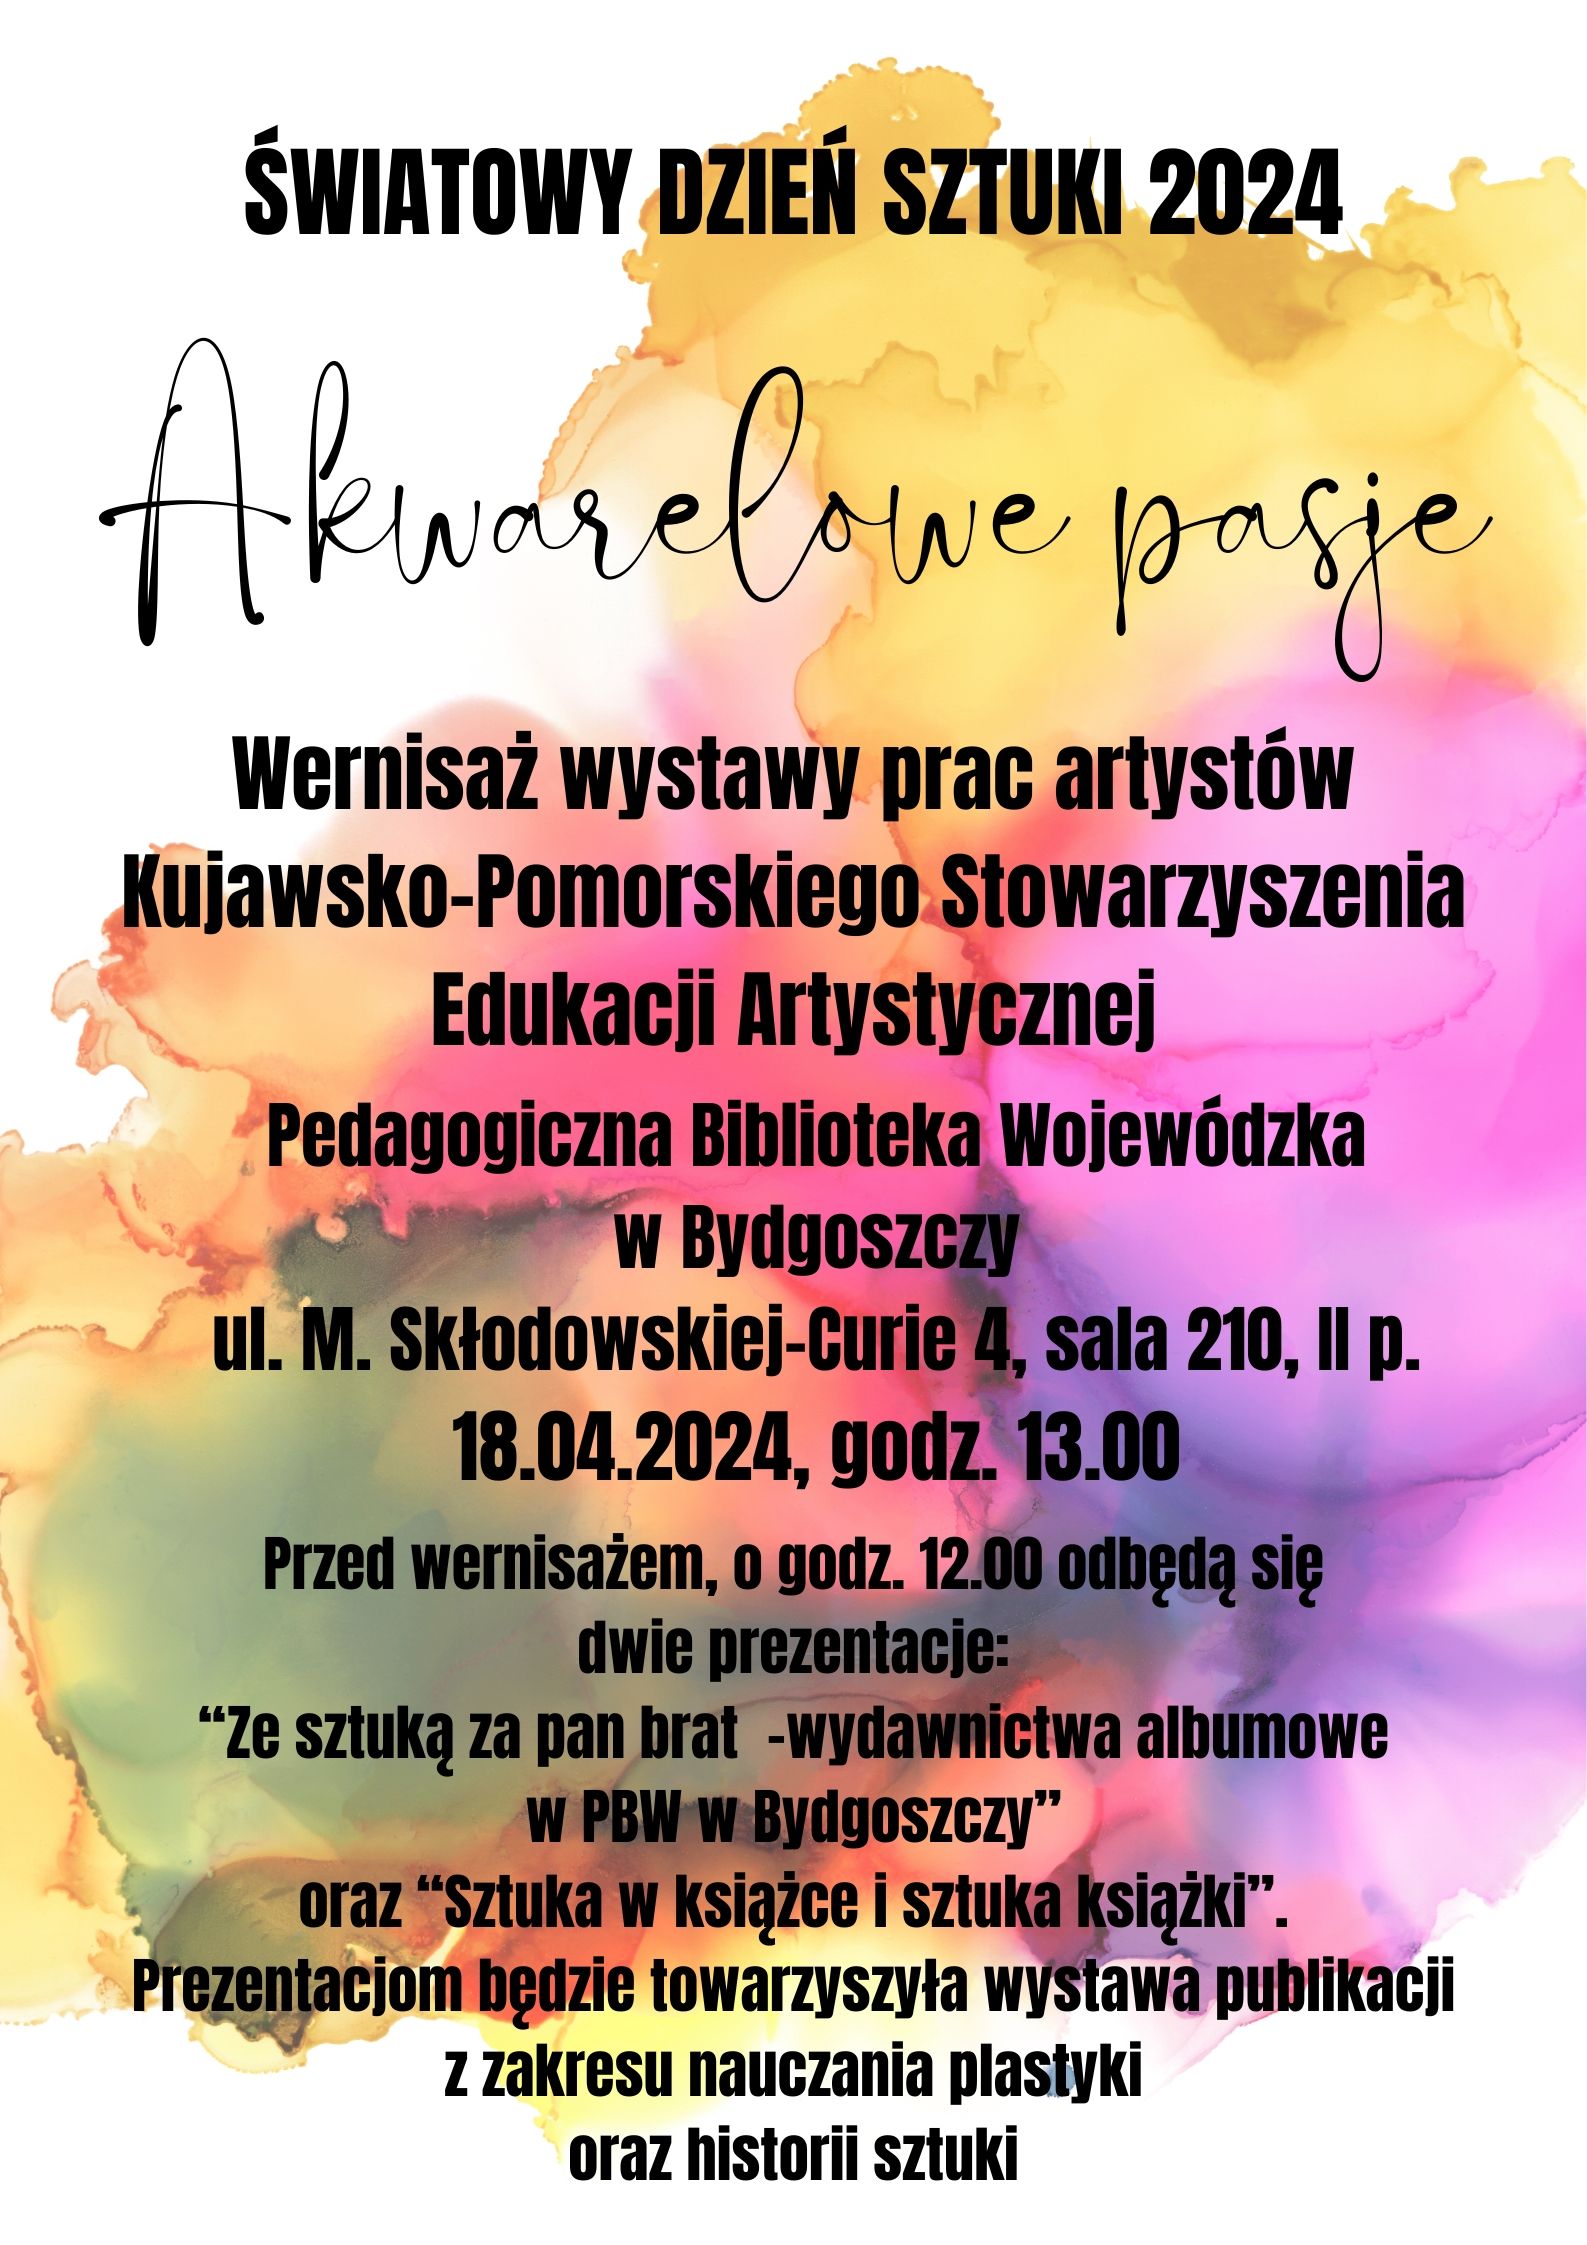 Plakat informacyjny wernisażu wystawy pt. "Akwarelowe pasje".